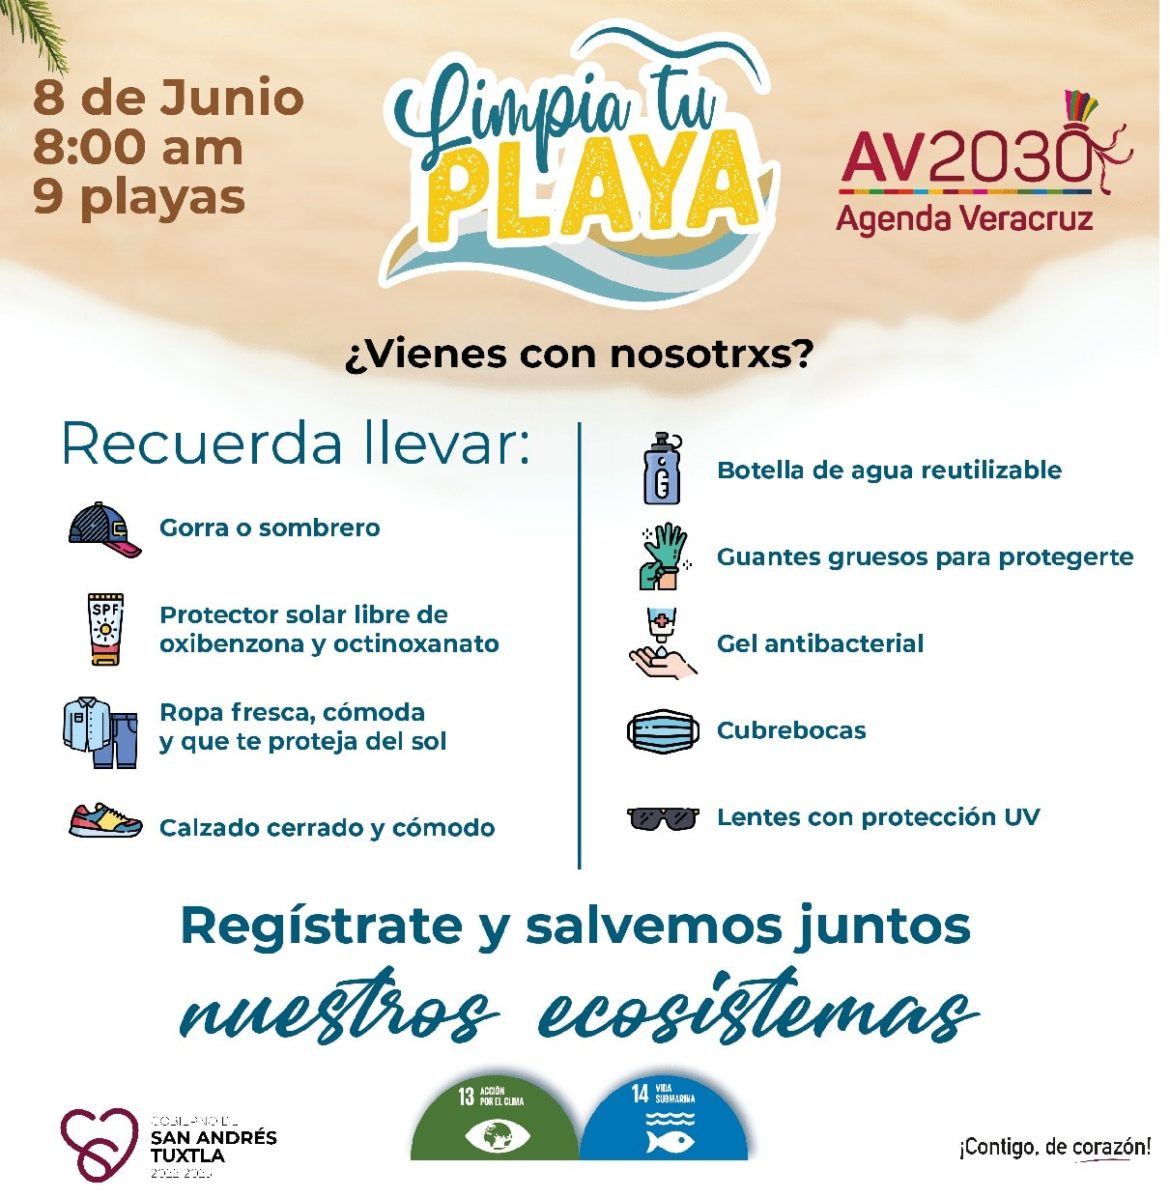 Ayuntamiento de San Andrés Tuxtla participará con el programa “Limpia Tu Playa” en Roca Partida